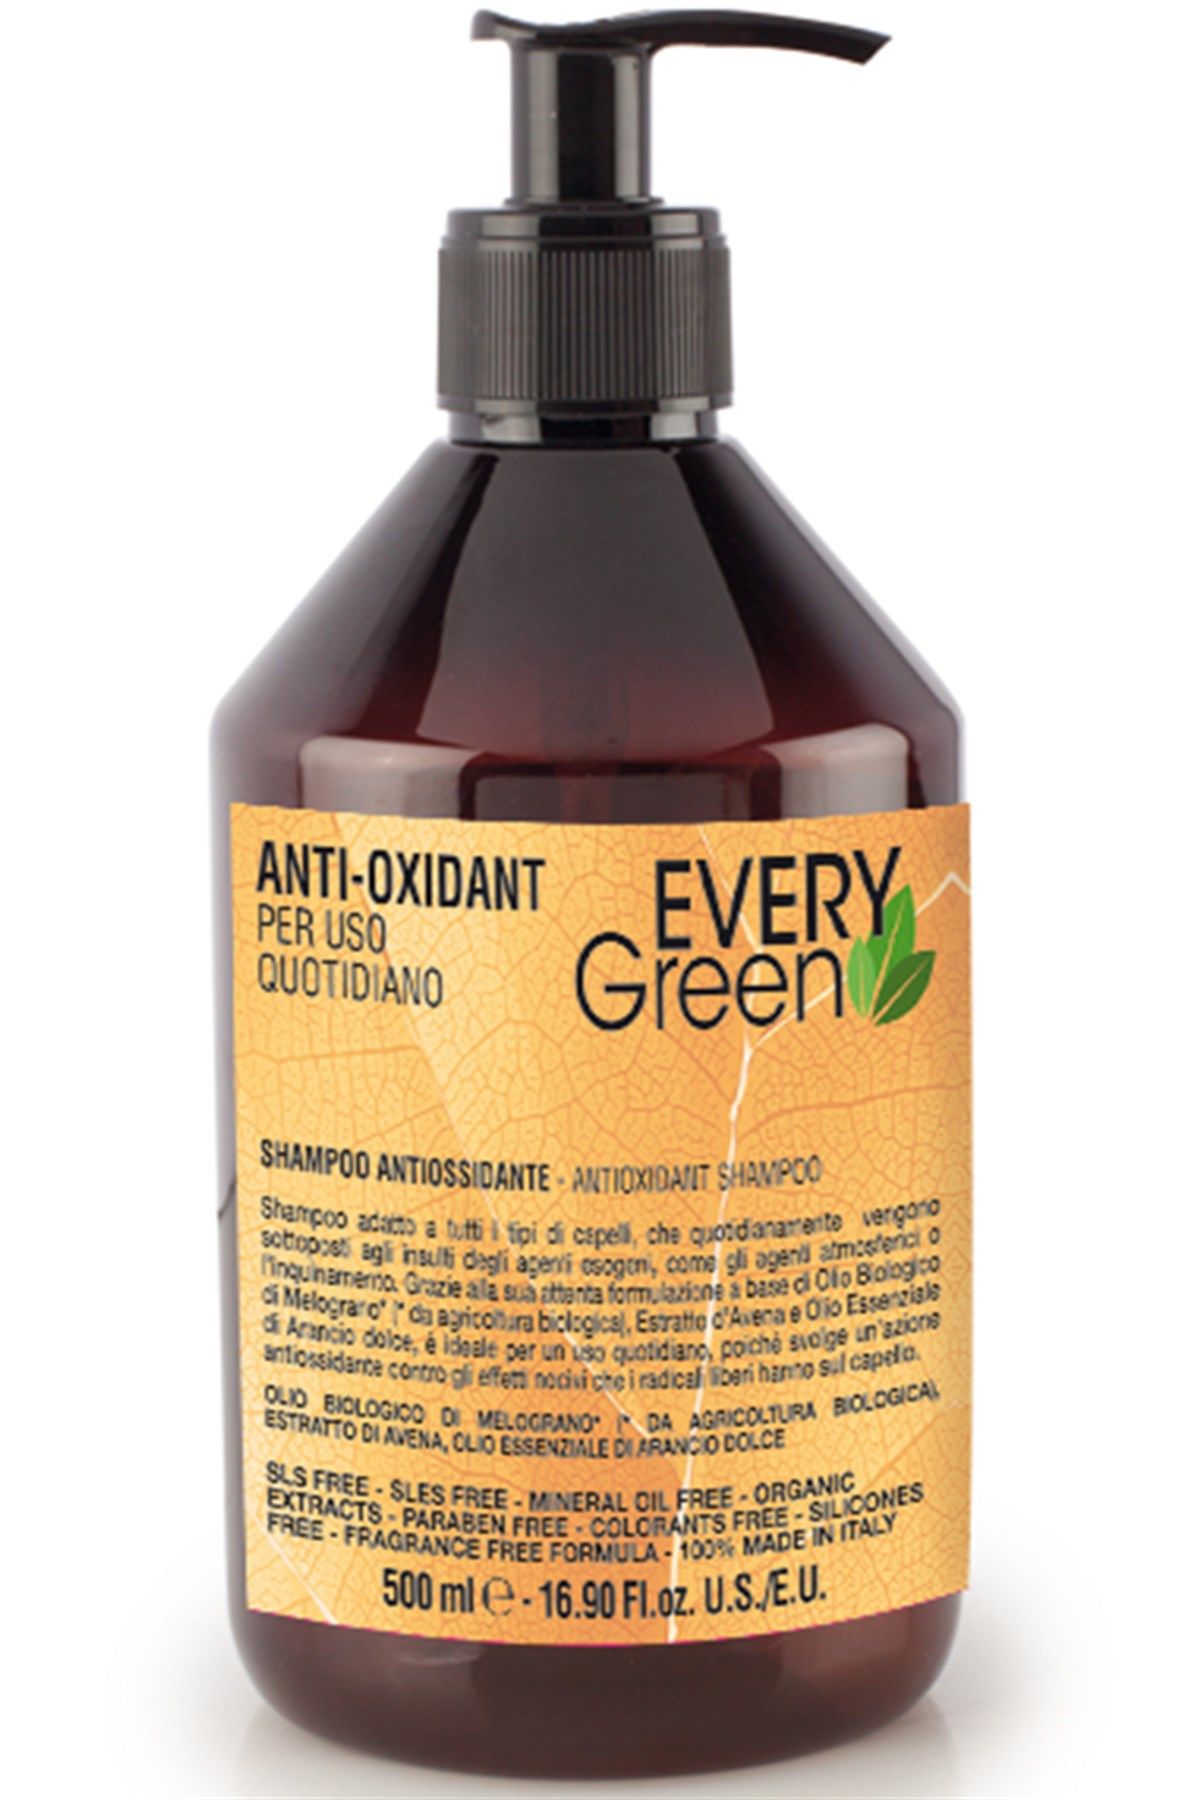 EveryGreen Anti Oxidant Shampoo - Tüm Saçlara Yenileyici Bakım Şampuanı 500 Ml.